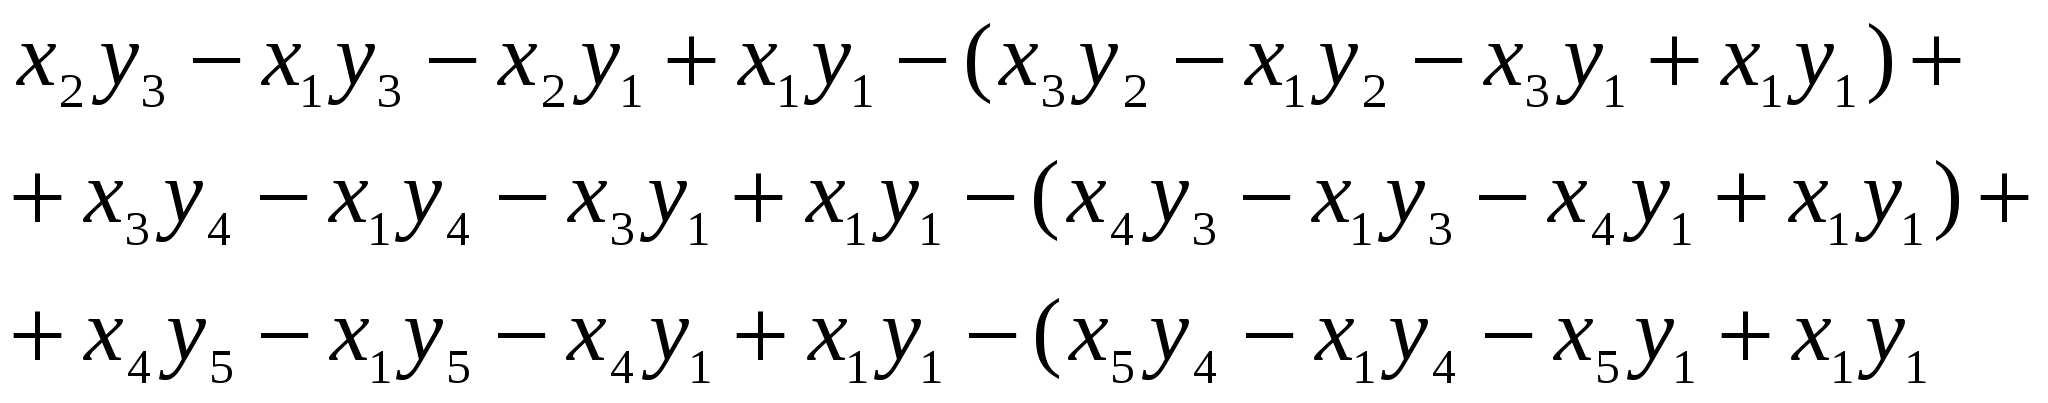 Учебный материал Площадь многоугольника через определить второго порядка для элективного курса по математике, 10 класс.